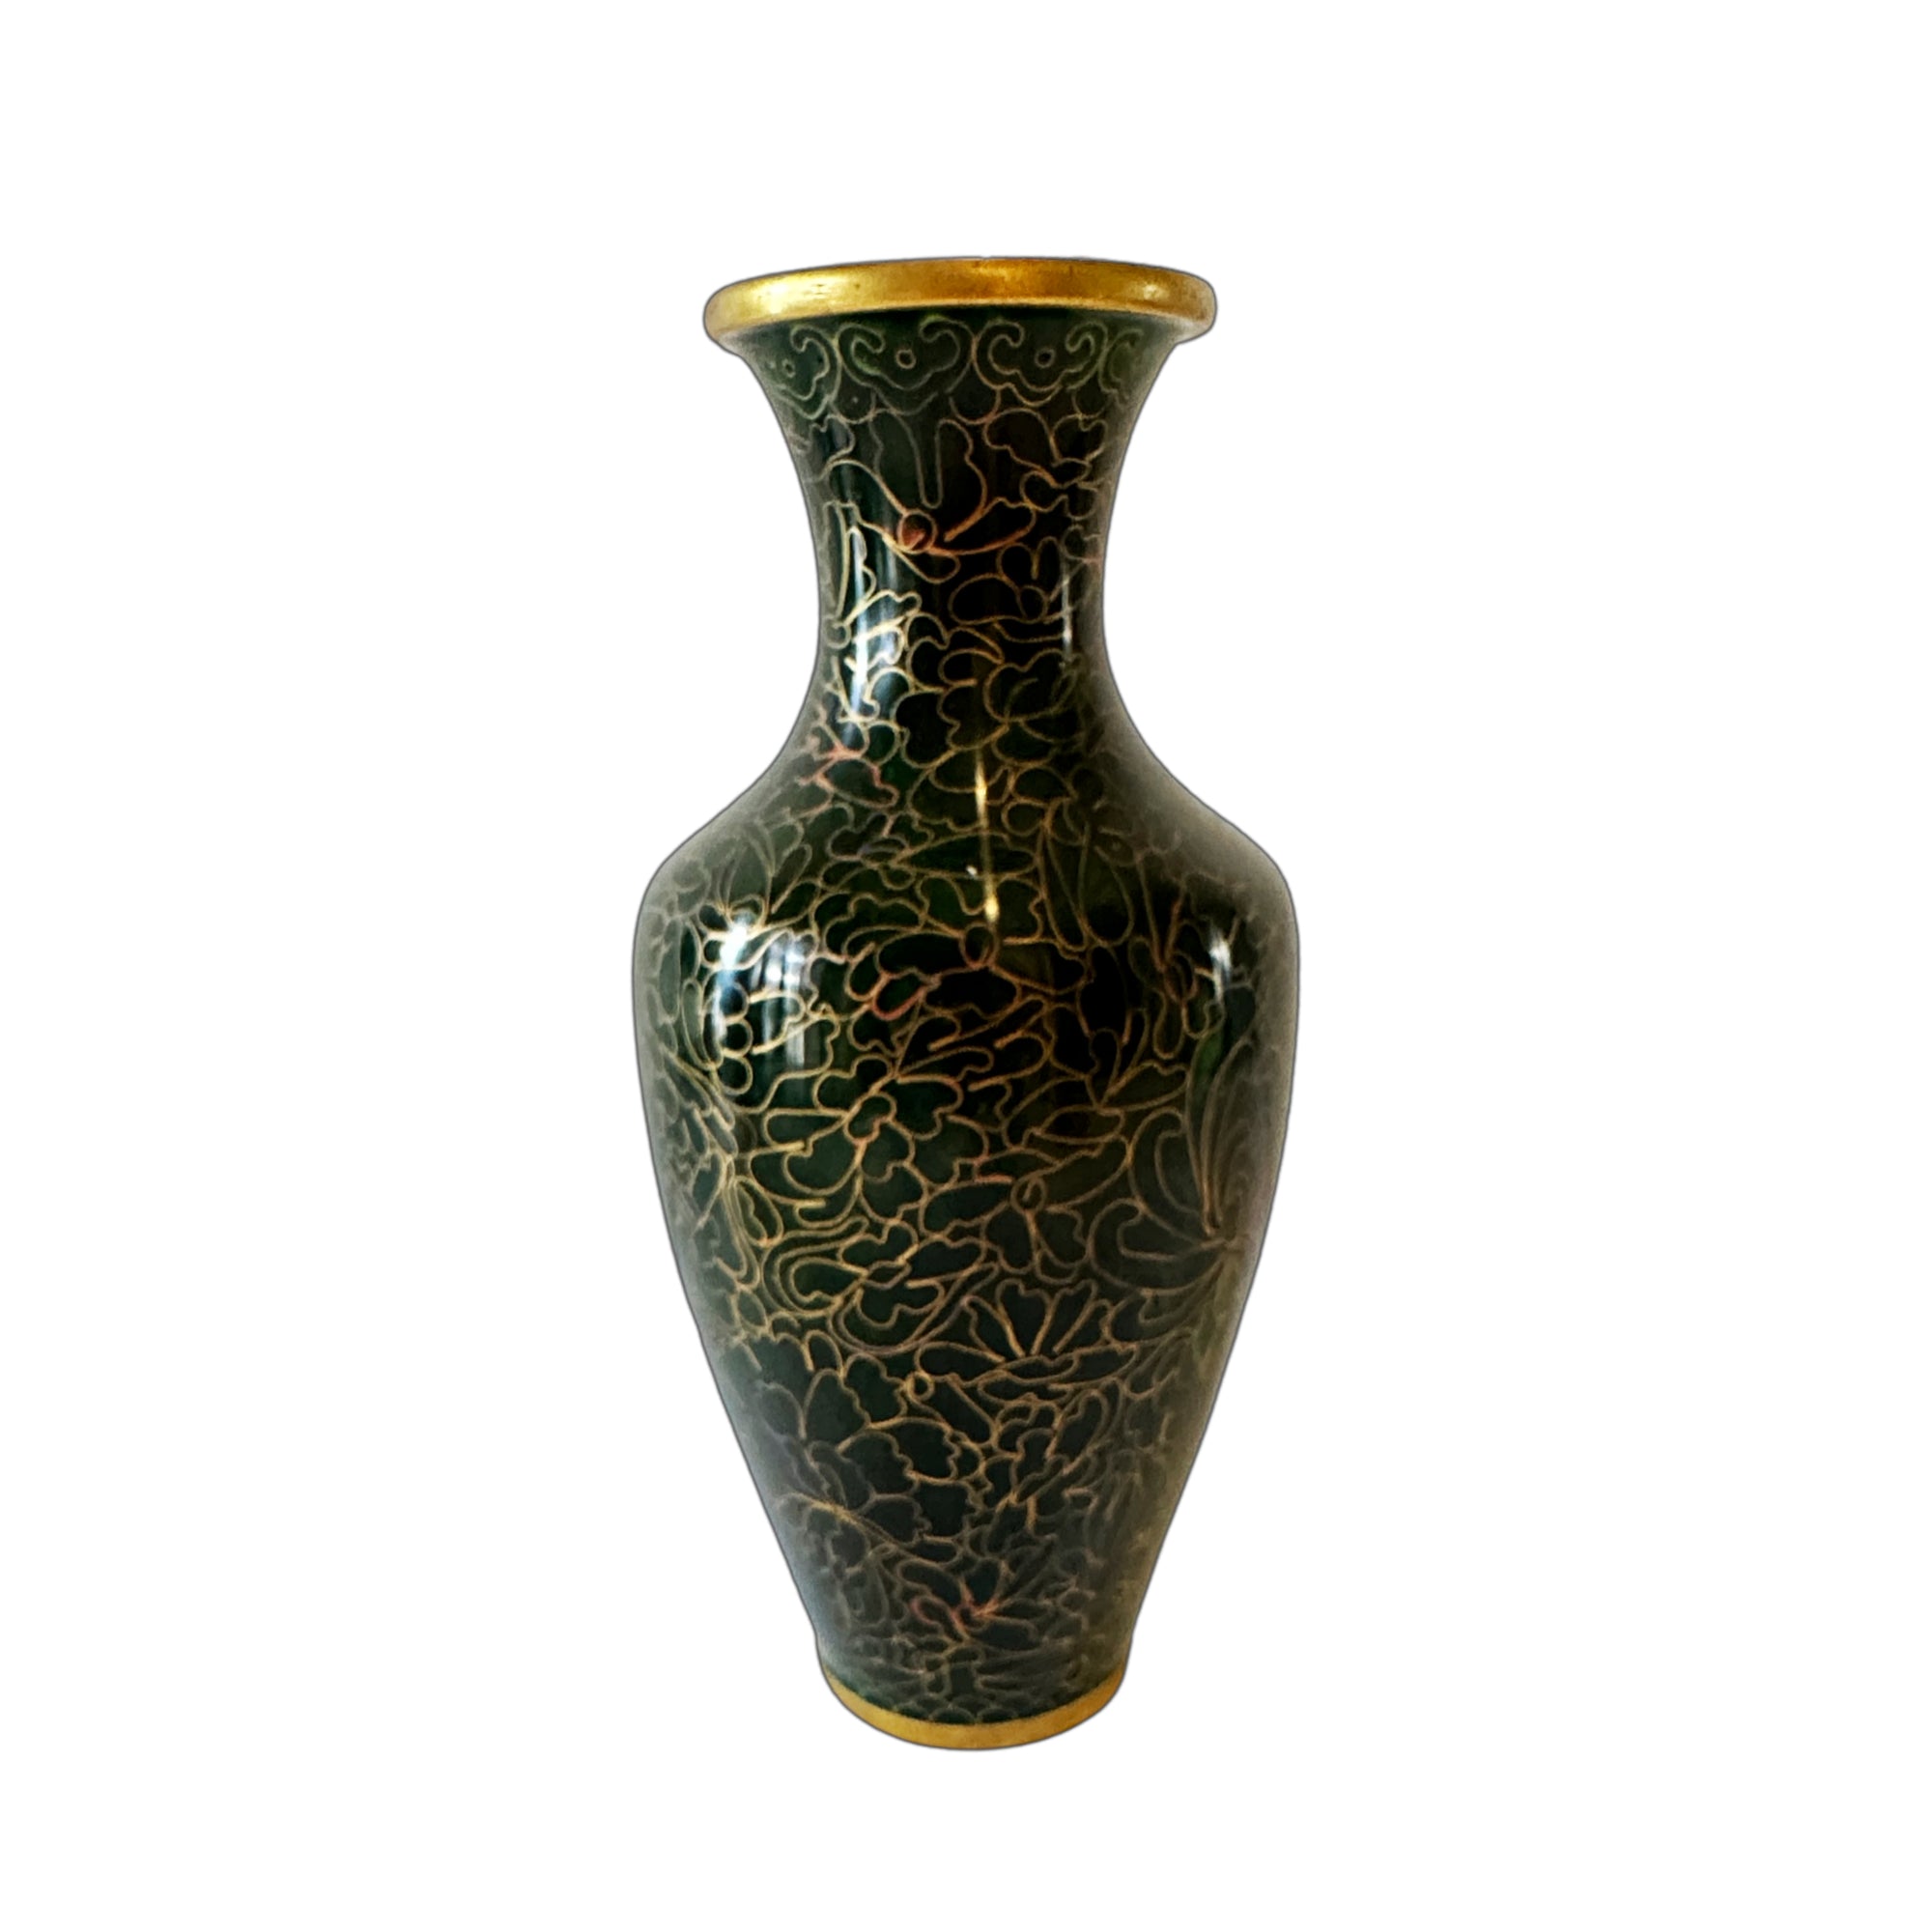 Vintage Dark Green Cloisonne Vase - Hunt and Bloom